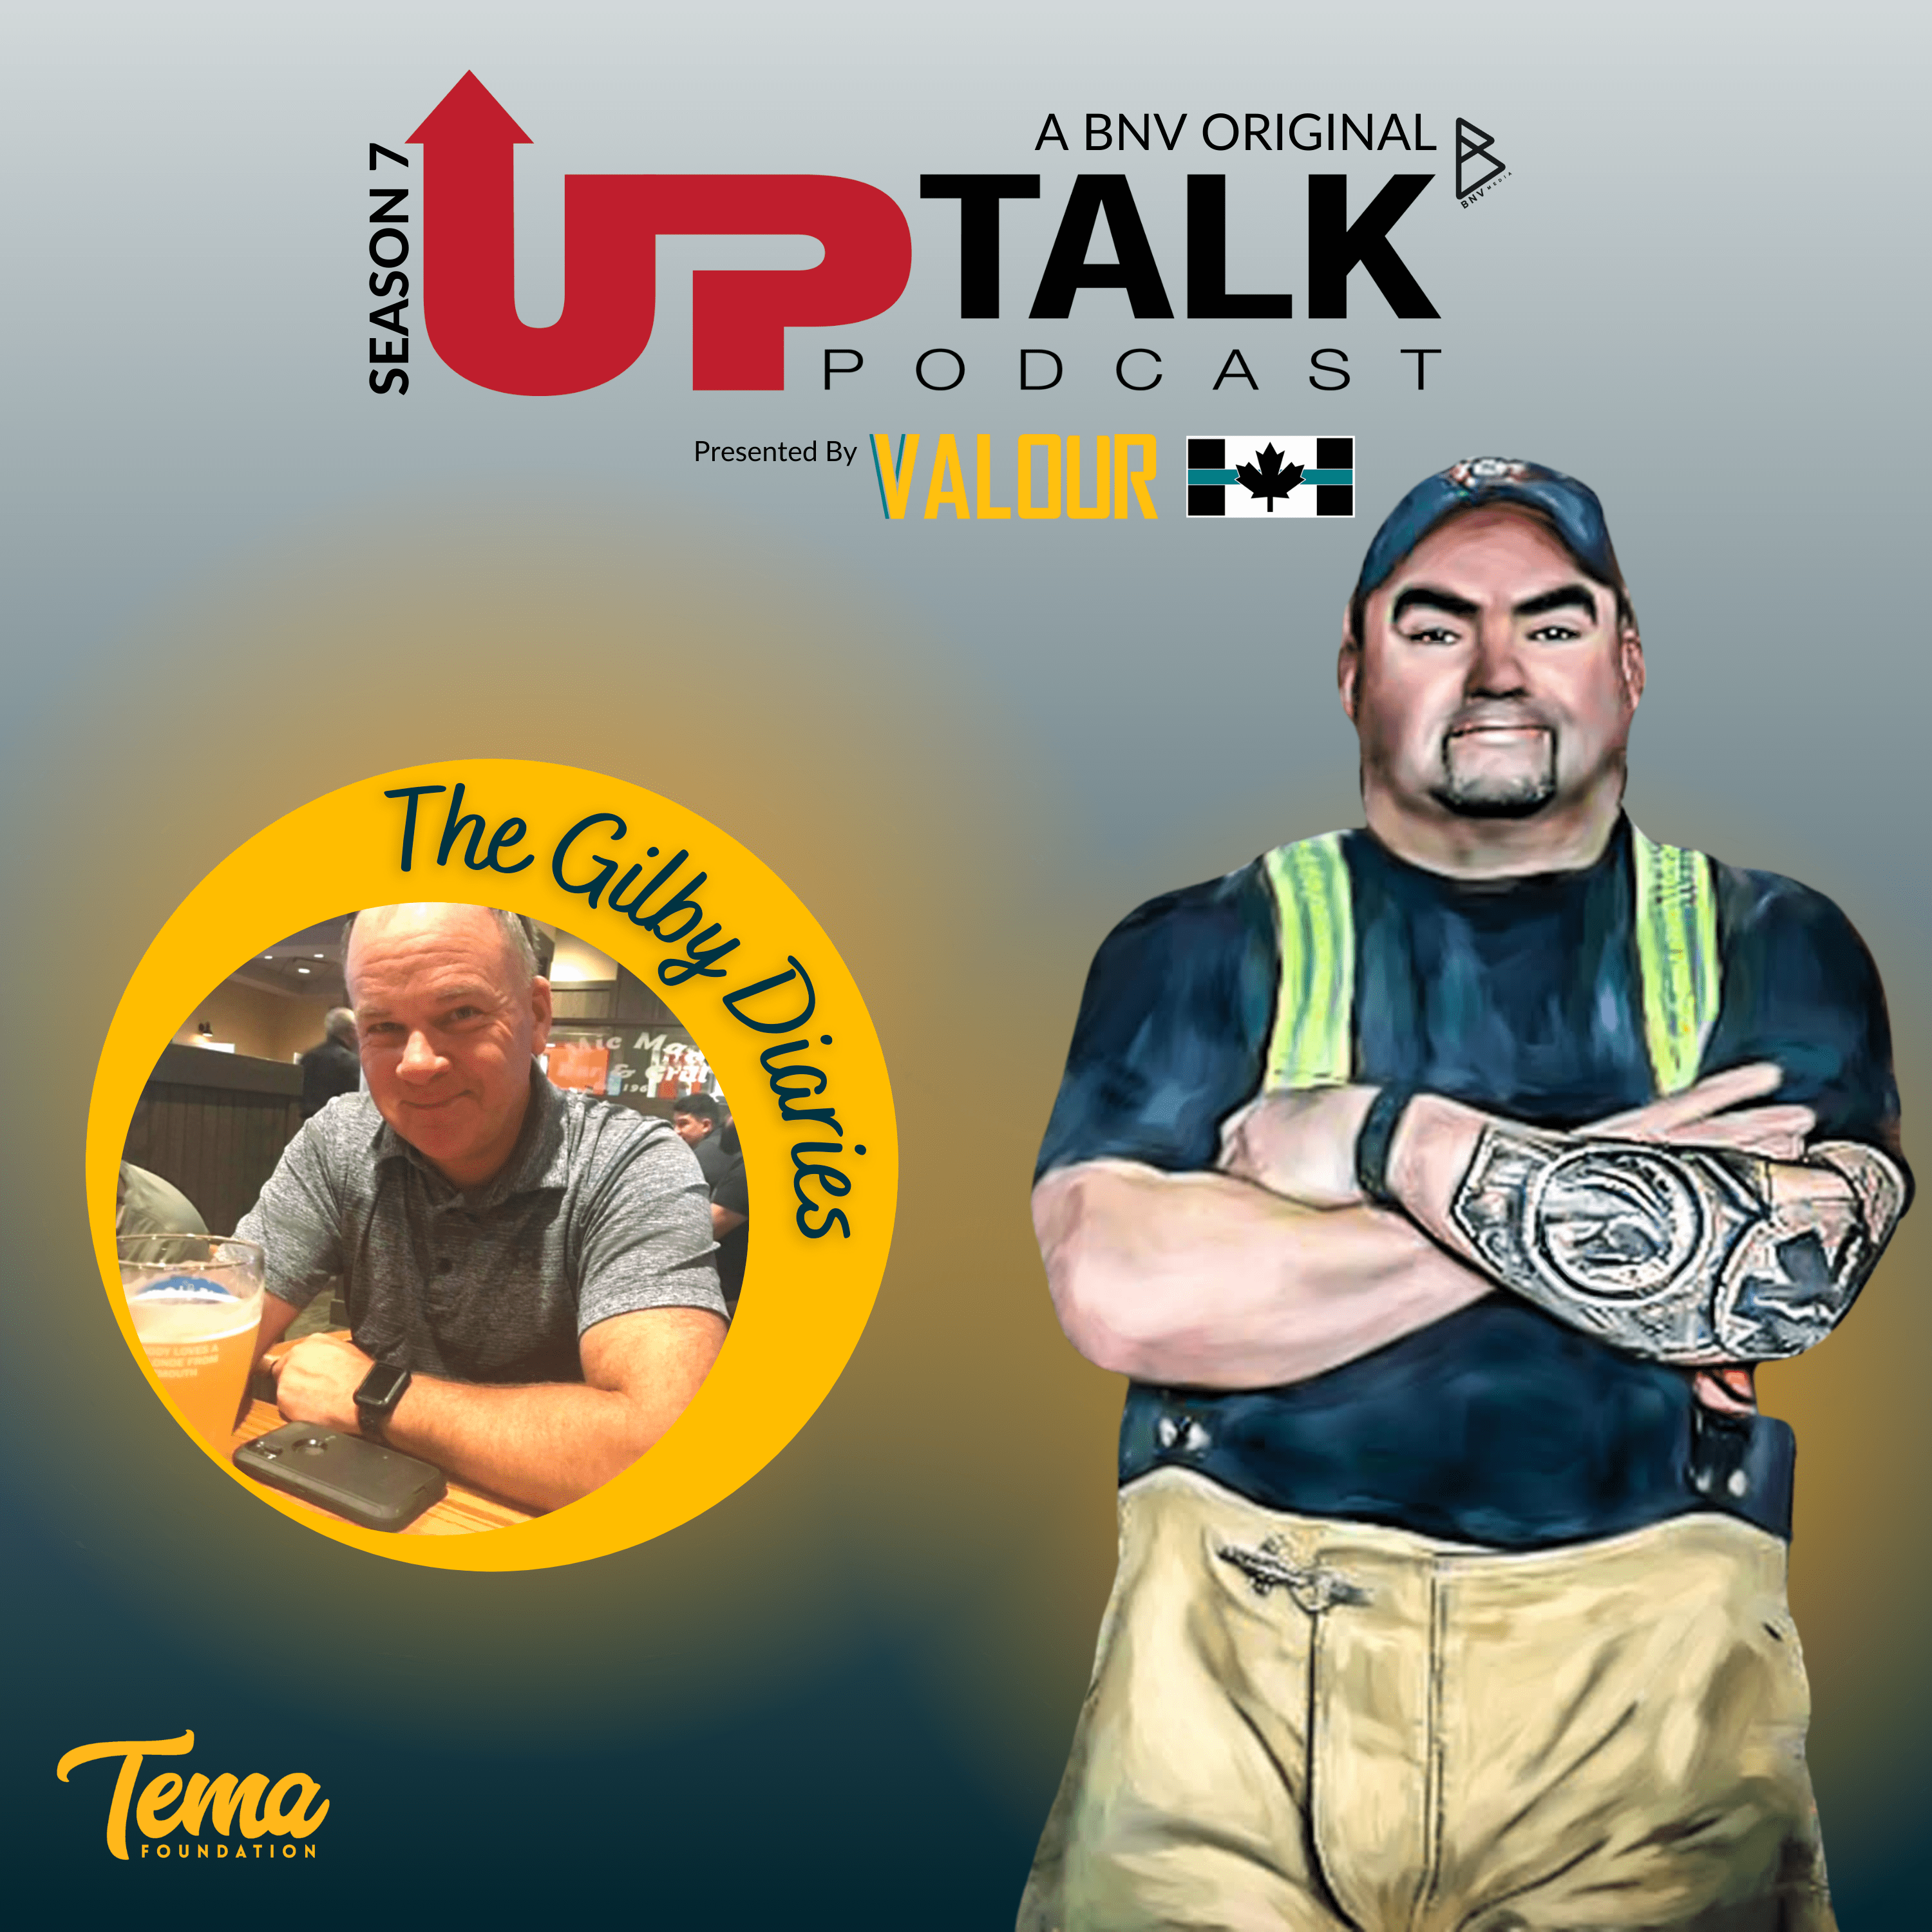 UpTalk Podcast